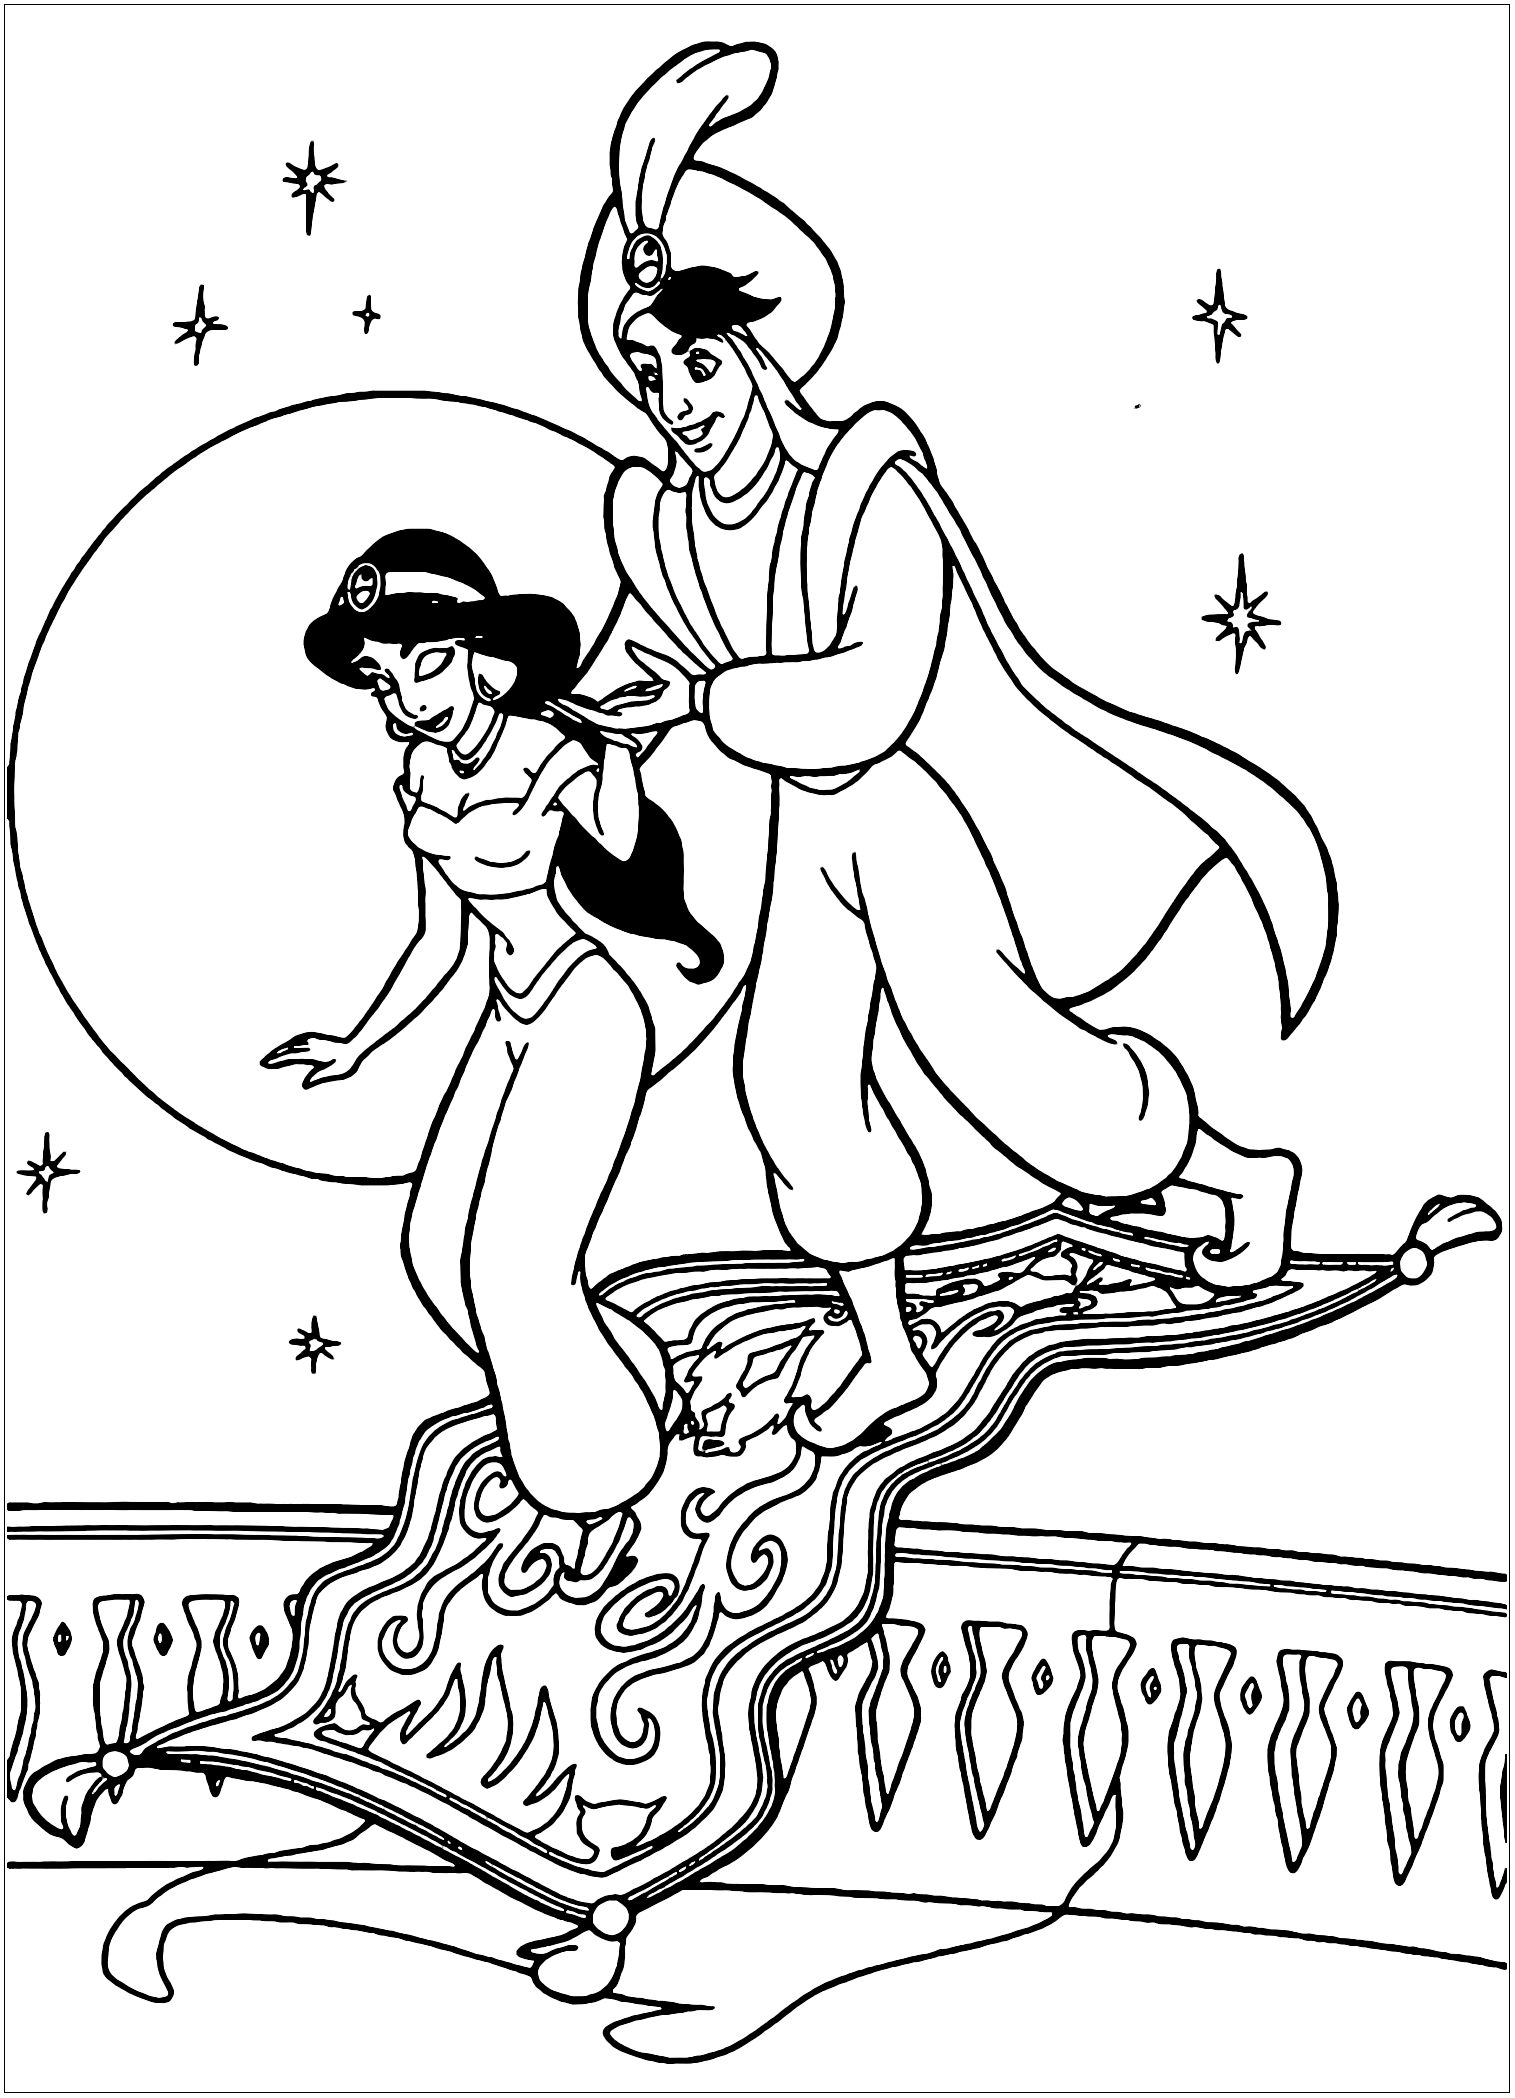 Aladino y Jasmine, personajes de Disney